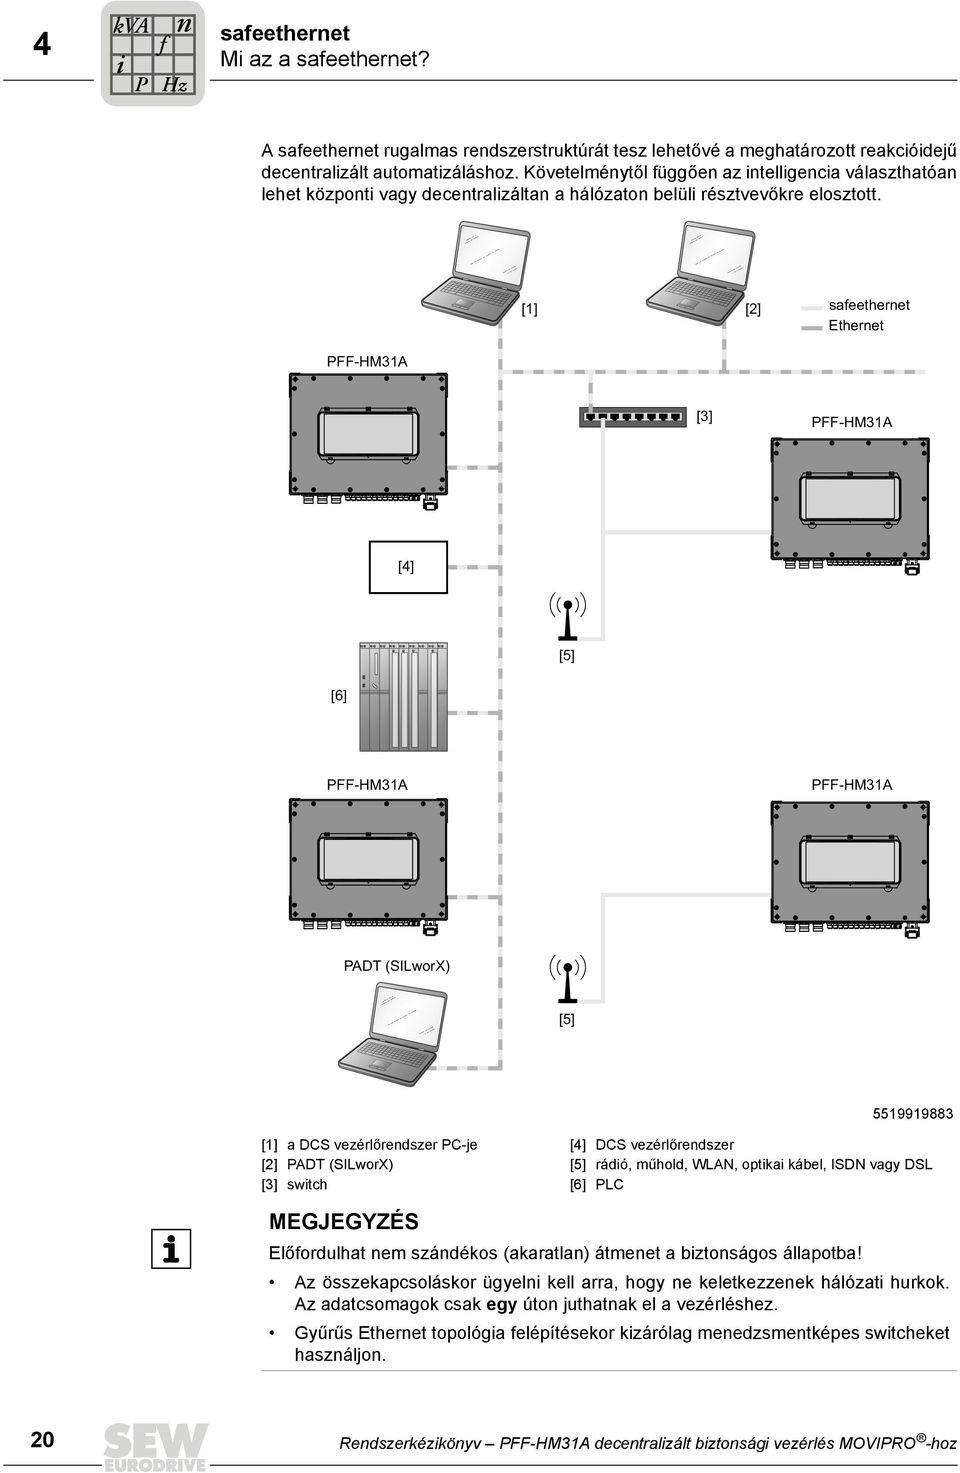 [1] [2] safeethernet Ethernet PFF-HM31A [3] PFF-HM31A [4] [5] [6] PFF-HM31A PFF-HM31A PADT (SILworX) [5] 5519919883 [1] a DCS vezérlőrendszer PC-je [4] DCS vezérlőrendszer [2] PADT (SILworX) [5]